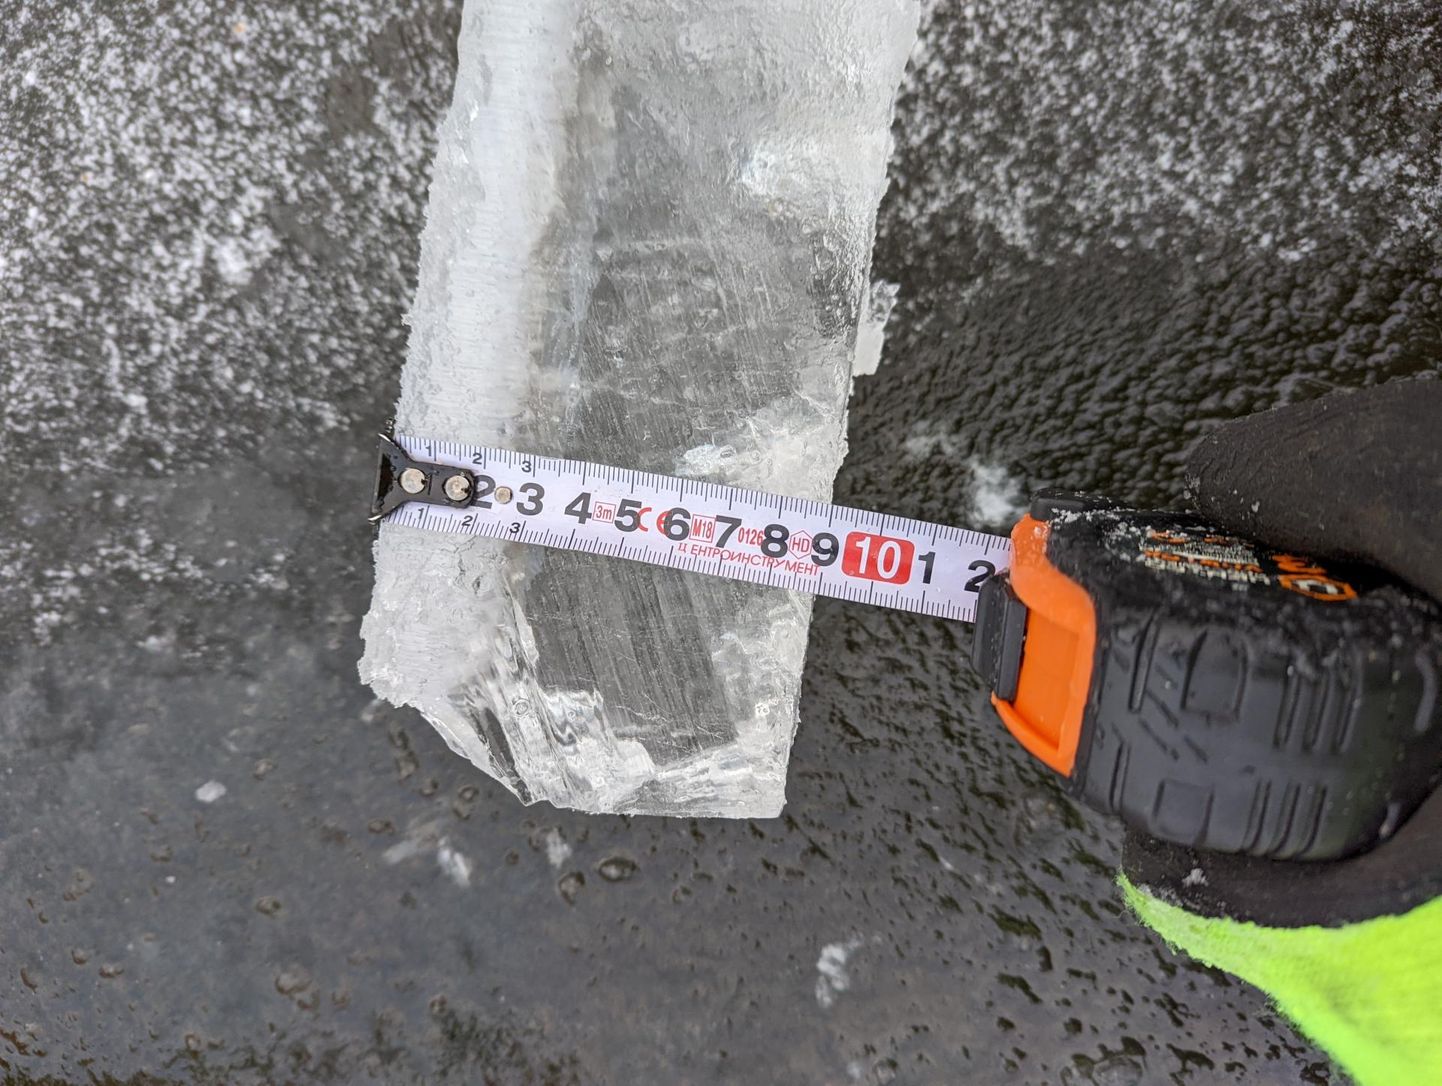 Esmaspäeval Paala järvel tehtud mõõtmine näitas Mikk Mihkel Vaabelile, et jää paksus on seal 8–10 sentimeetrit, kuid kalda ääres on jääkiht väga nõrk.